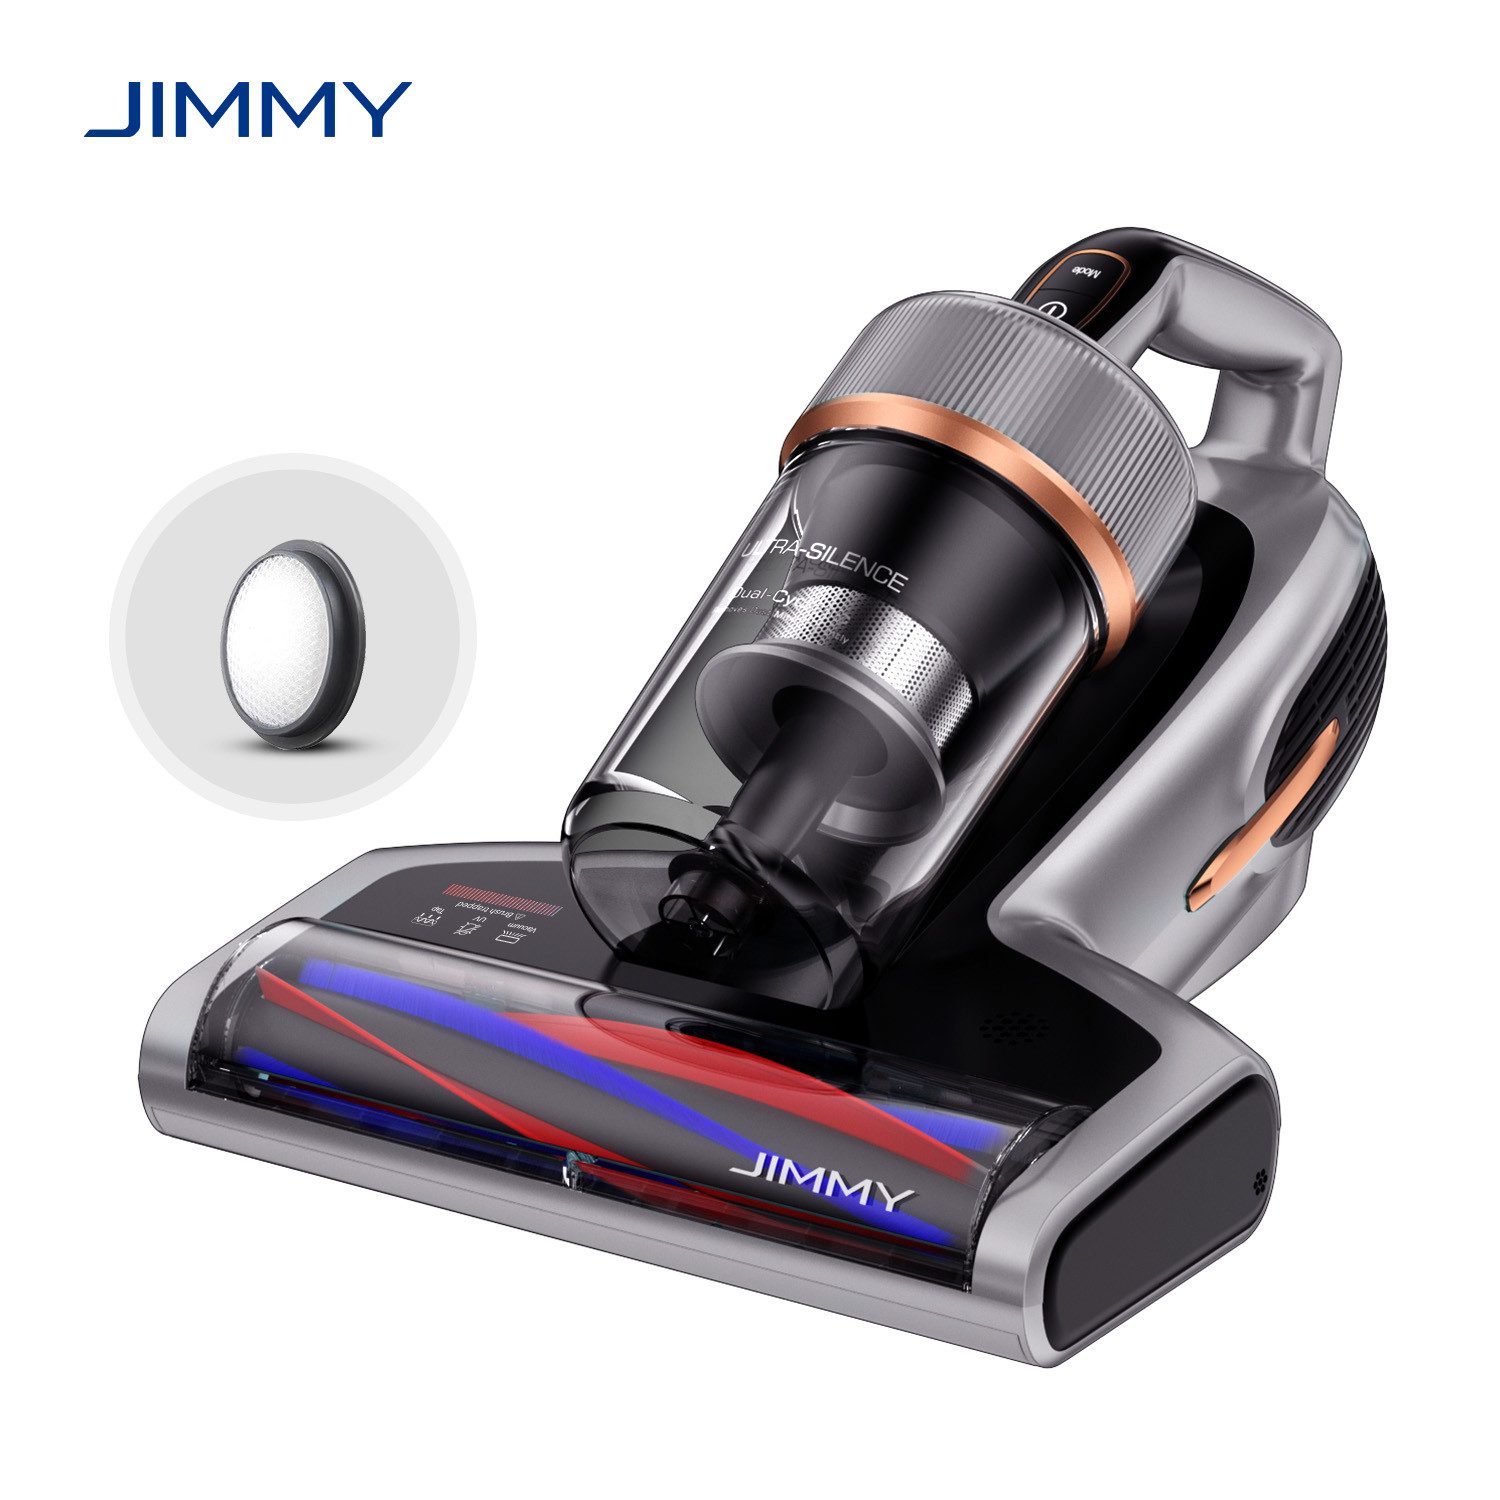 Jimmy Matratzenreinigungsgerät BX7 Pro 700W Intelligenter Anti-Milben-Staubsauger, 700,00 W, Stauberkennung & Ultraschall-Saugleistung Von 16 KPa